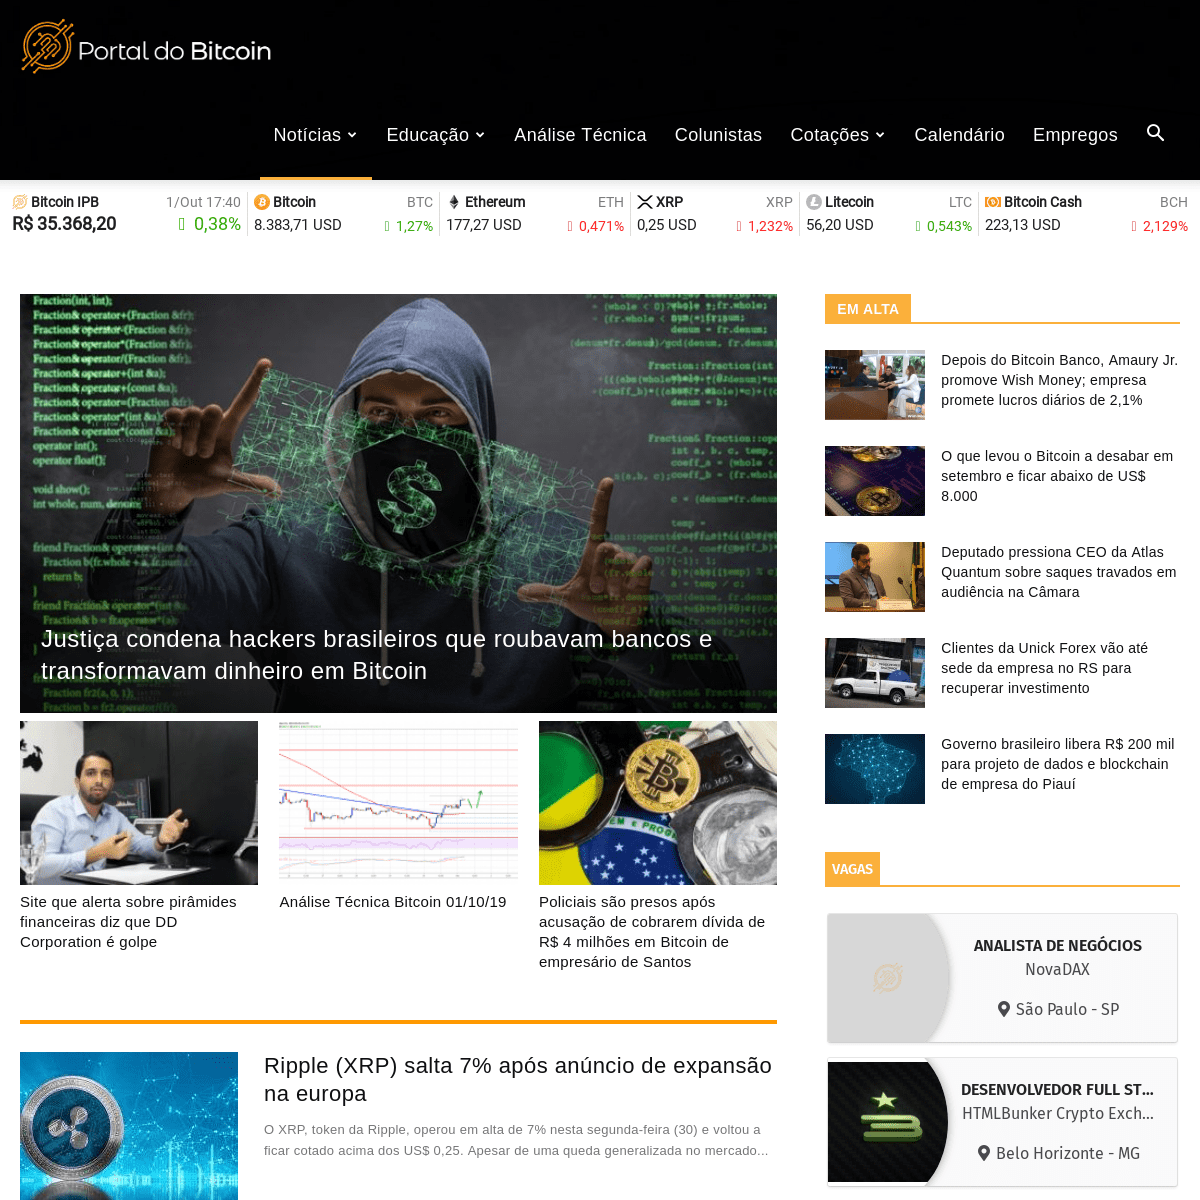 Portal do Bitcoin - Notícias sobre Bitcoin, Criptoativos e Blockchain